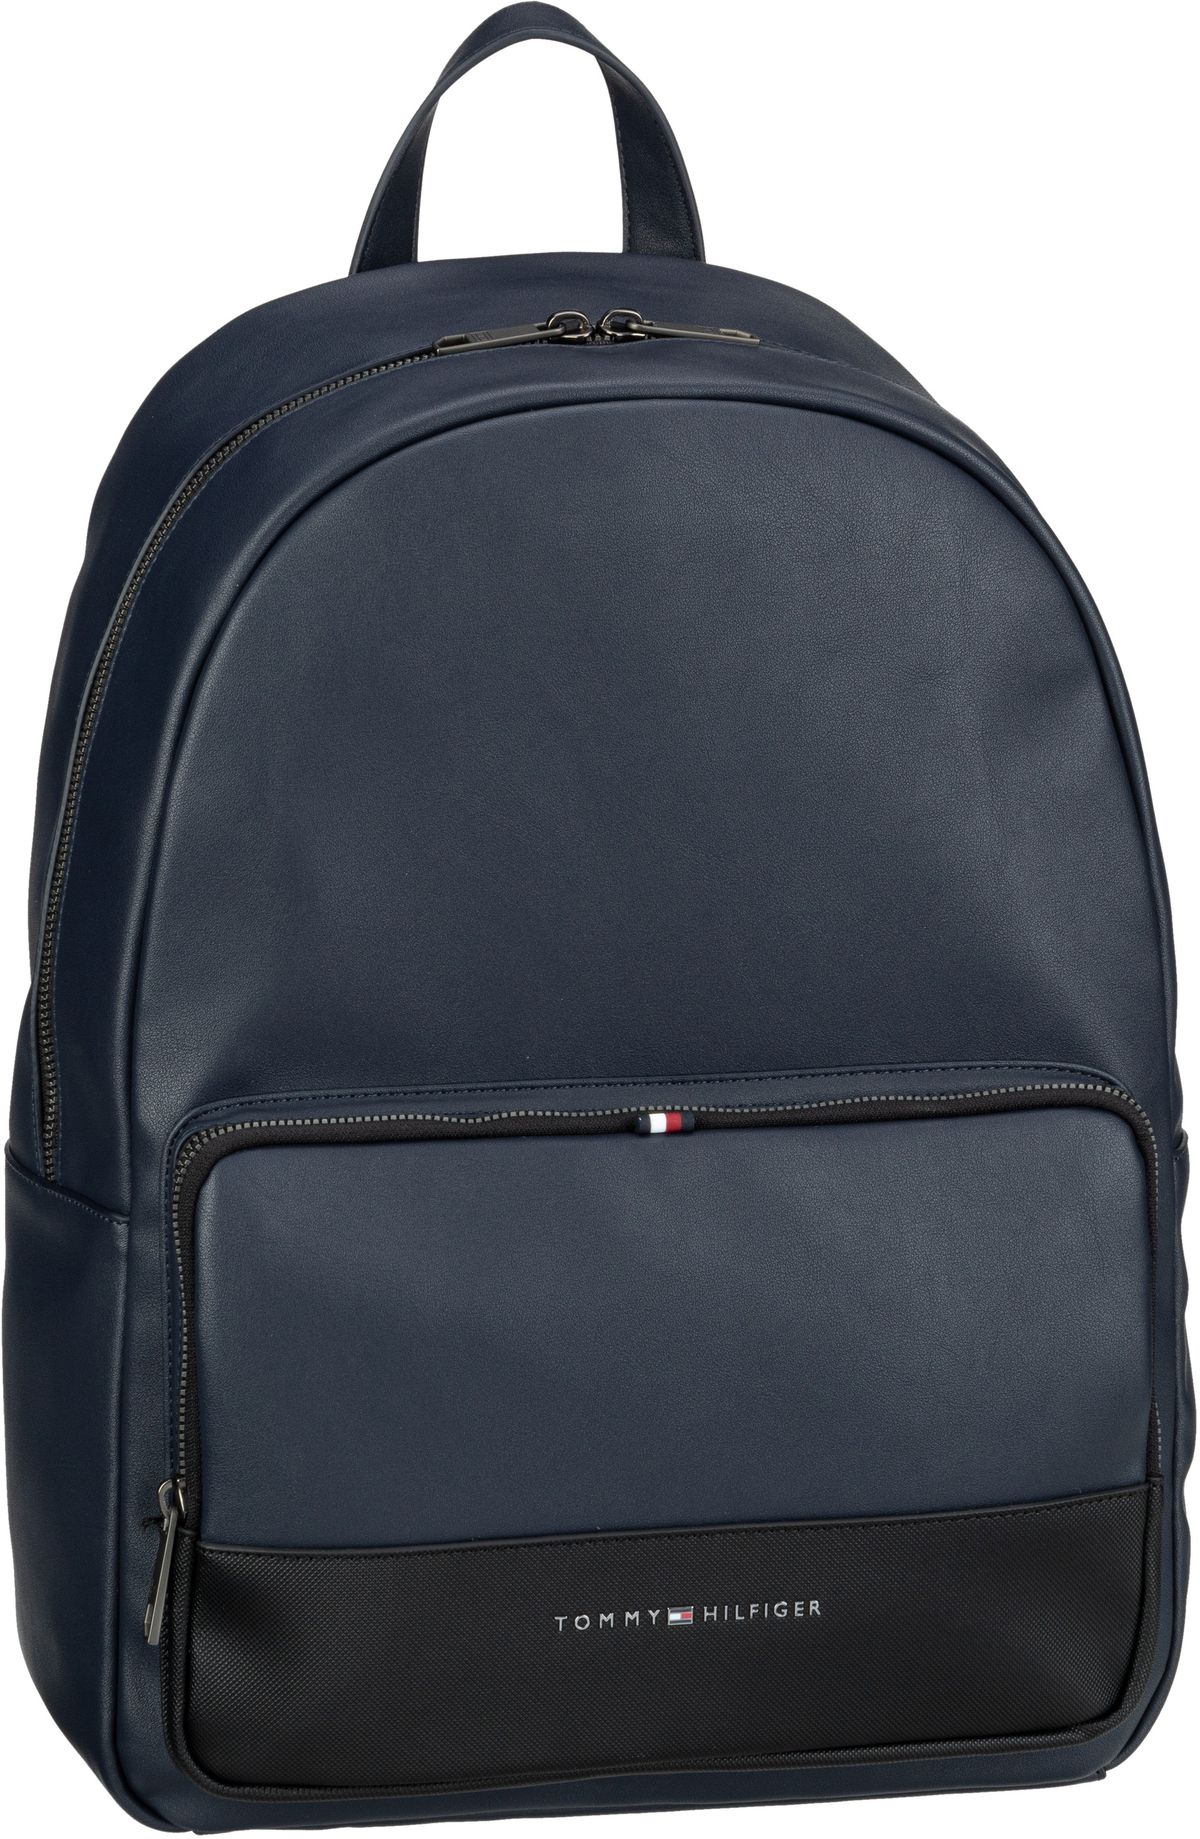 tommy hilfiger -  Rucksack / Daypack TH Essential Backpack SP23 Space Blue (16 Liter)